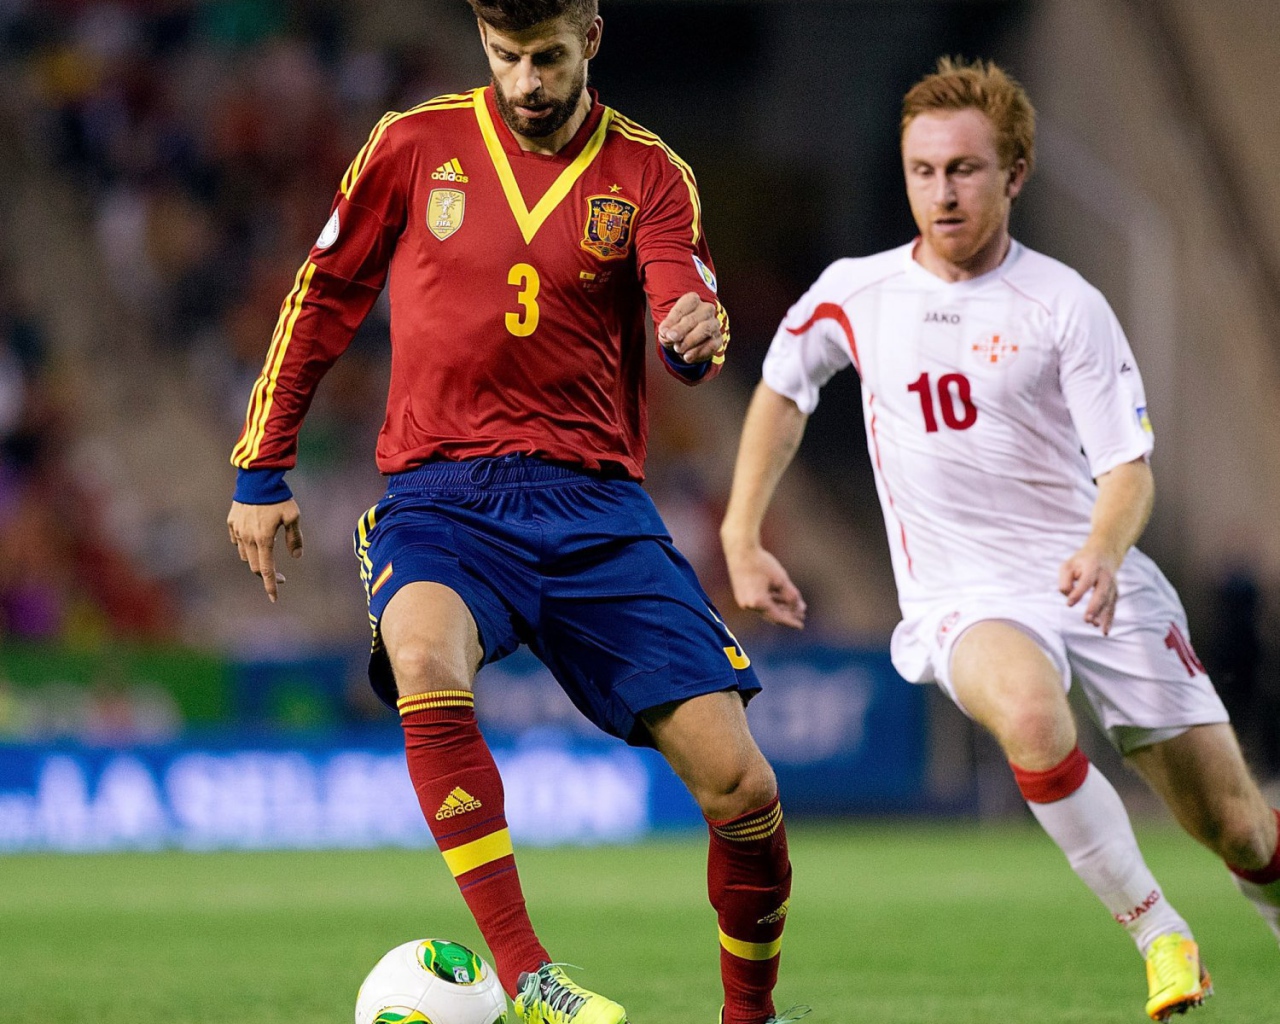 Игрок Барселоны Херард Пике забирает мяч